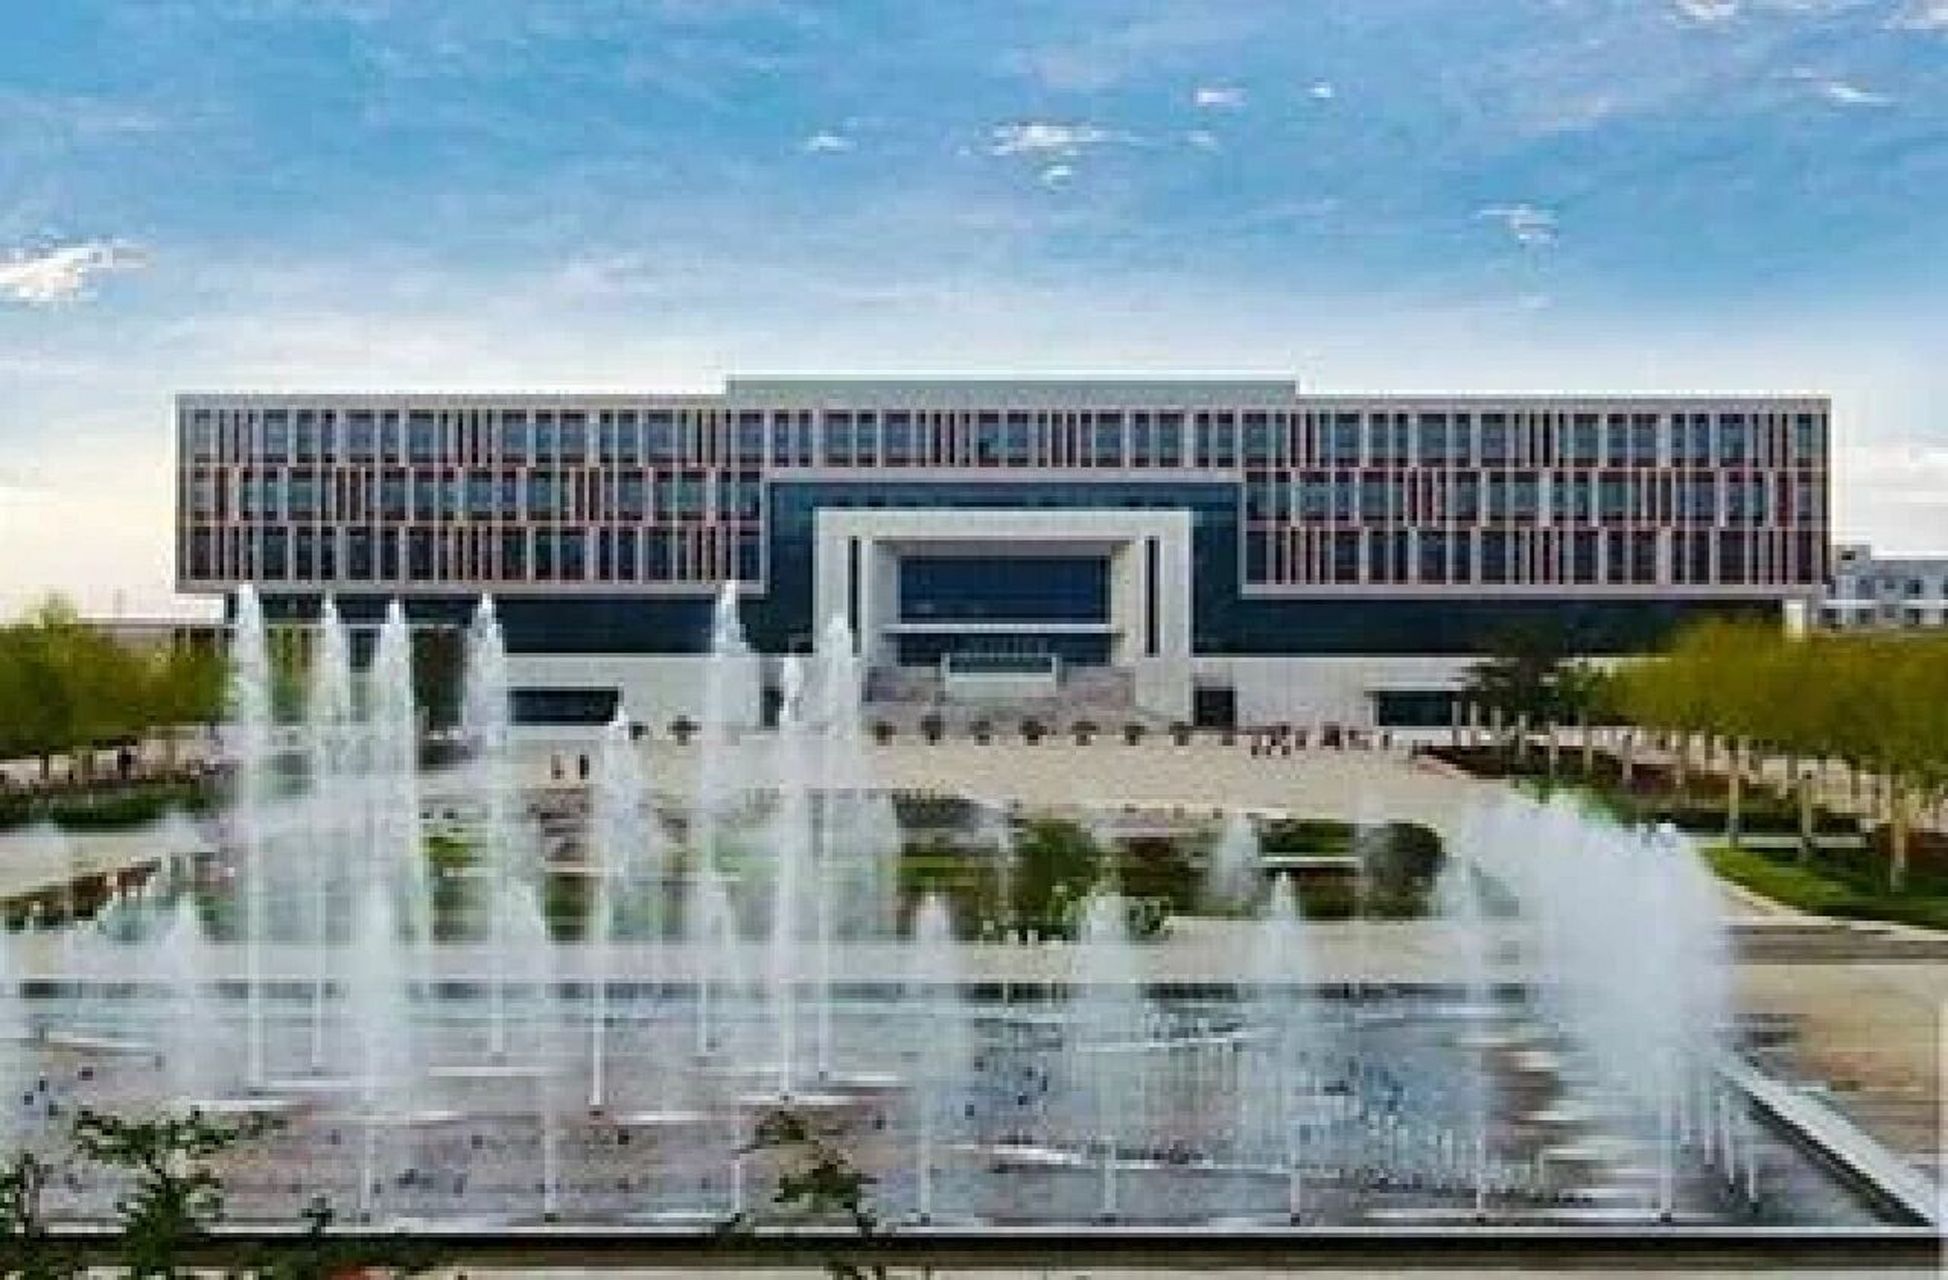 渭南职业技术学院logo图片